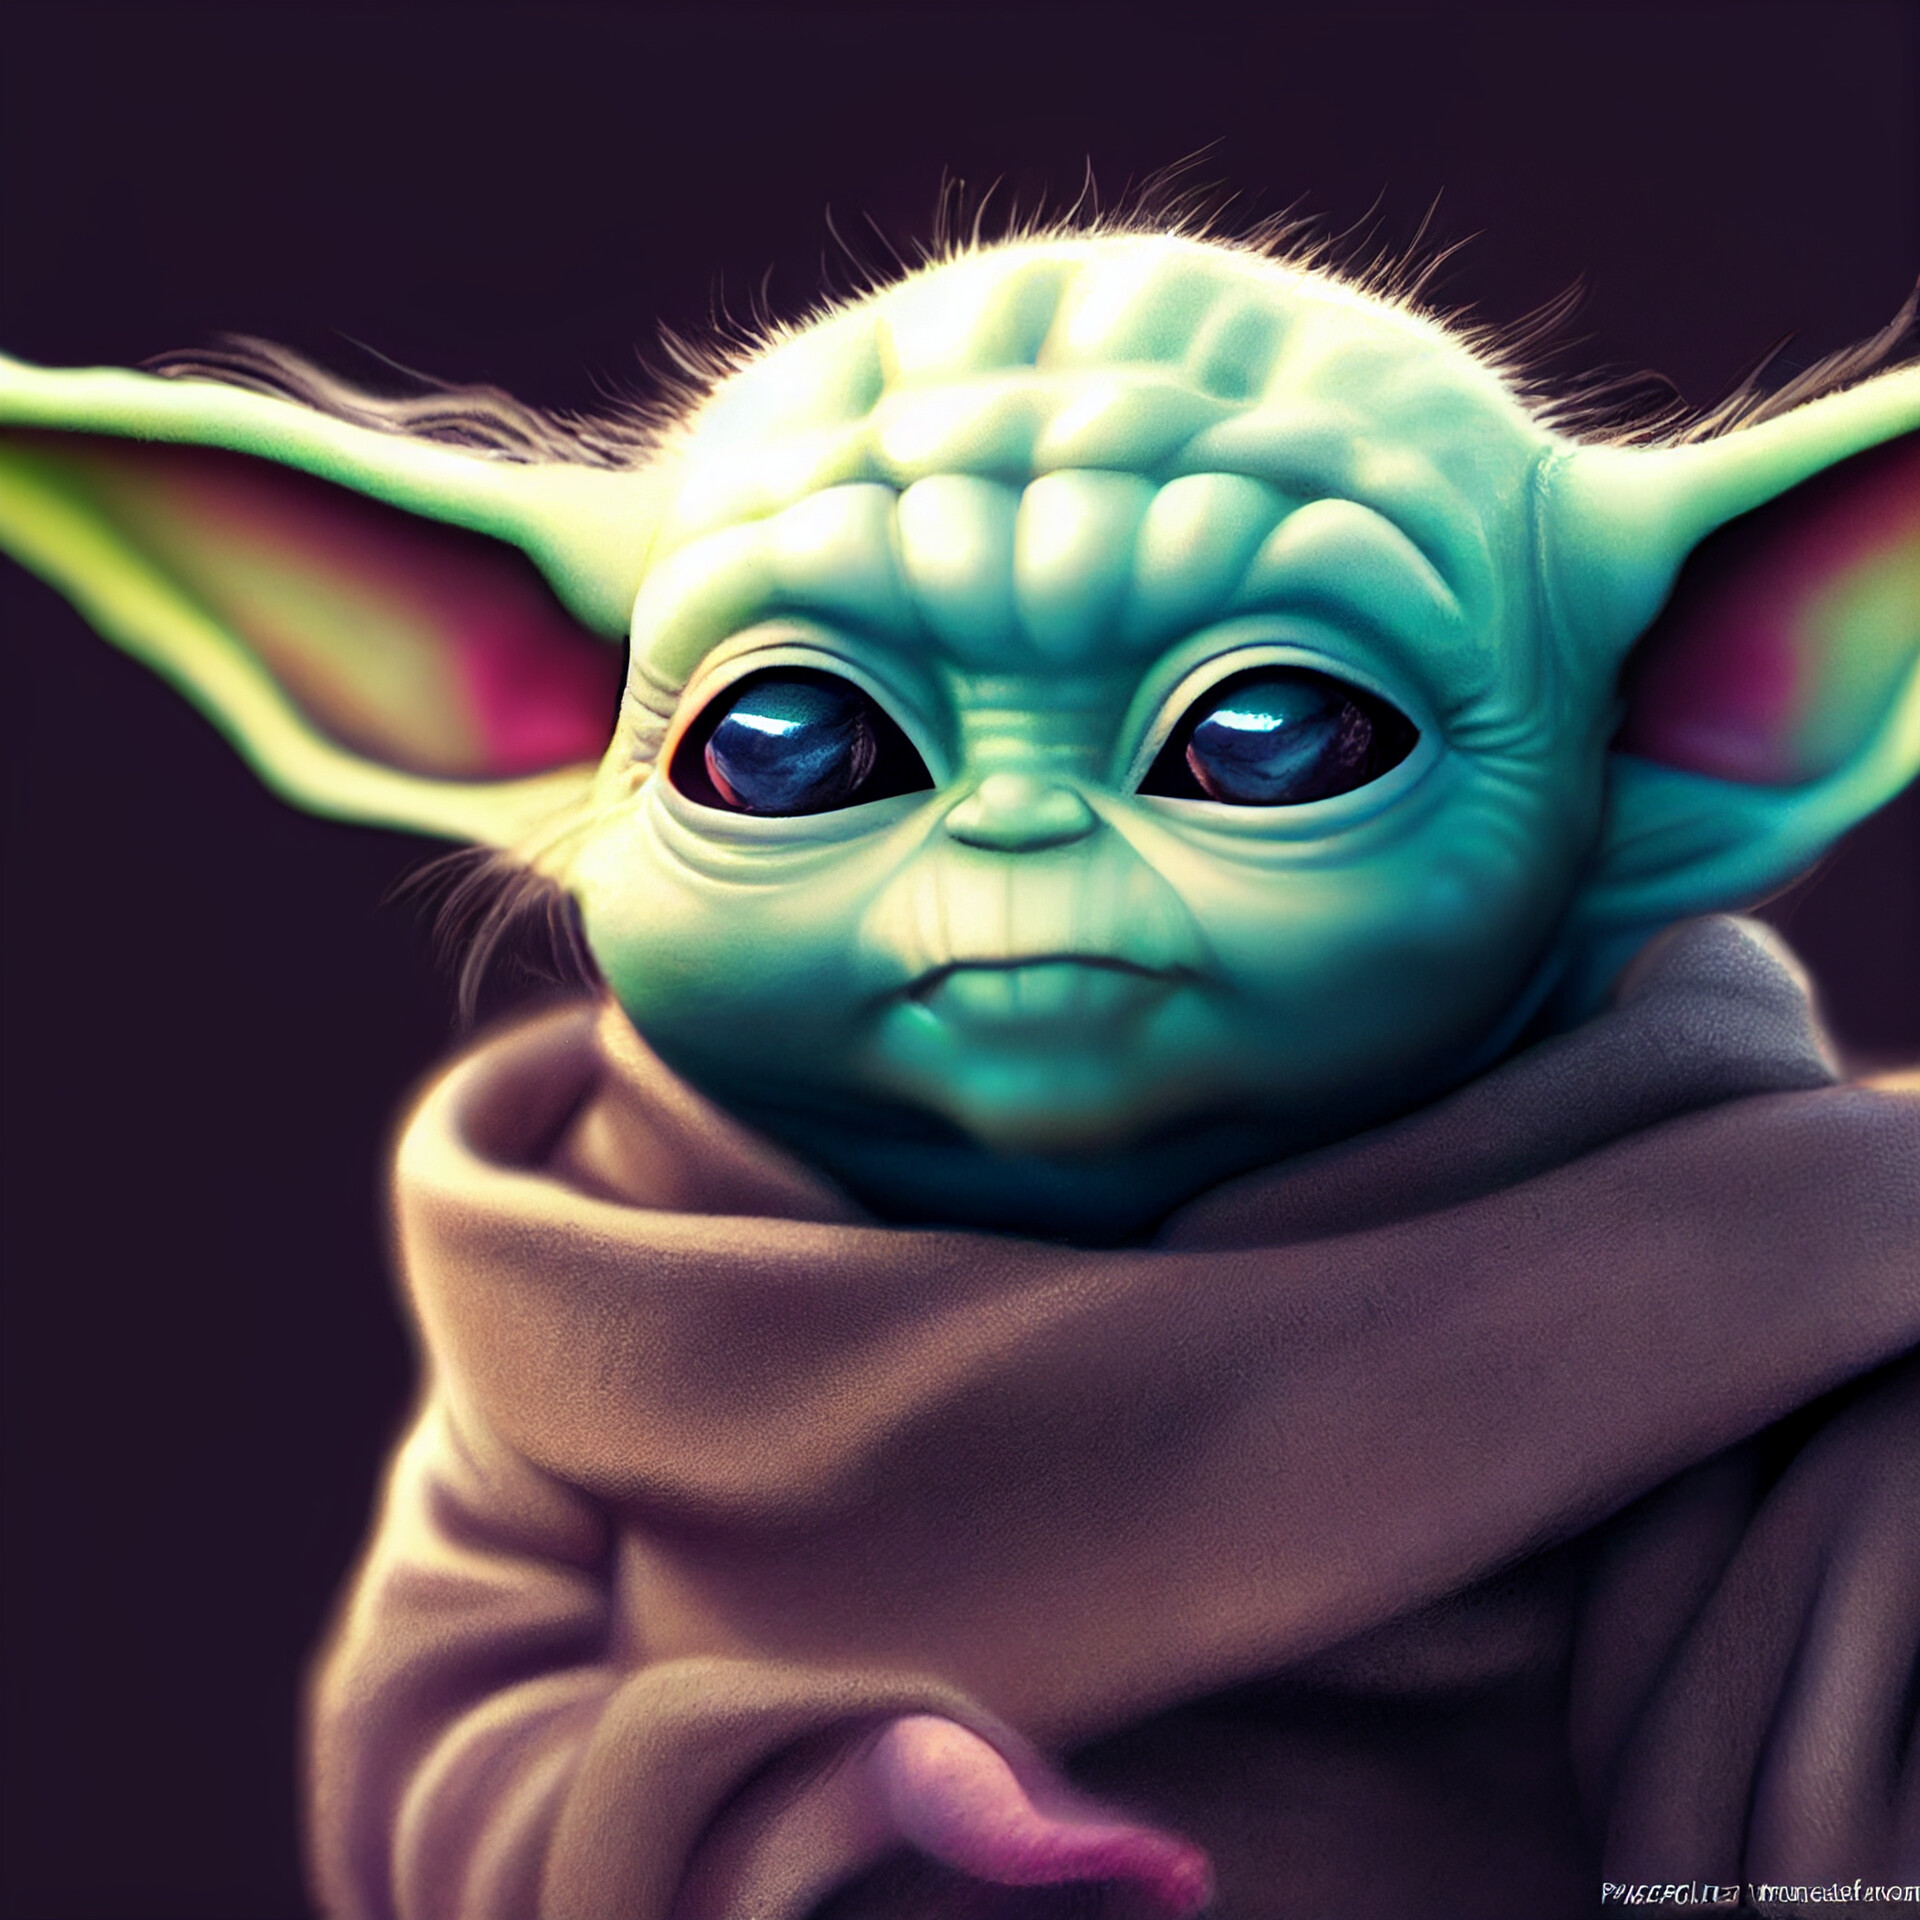 ArtStation - Baby Yoda